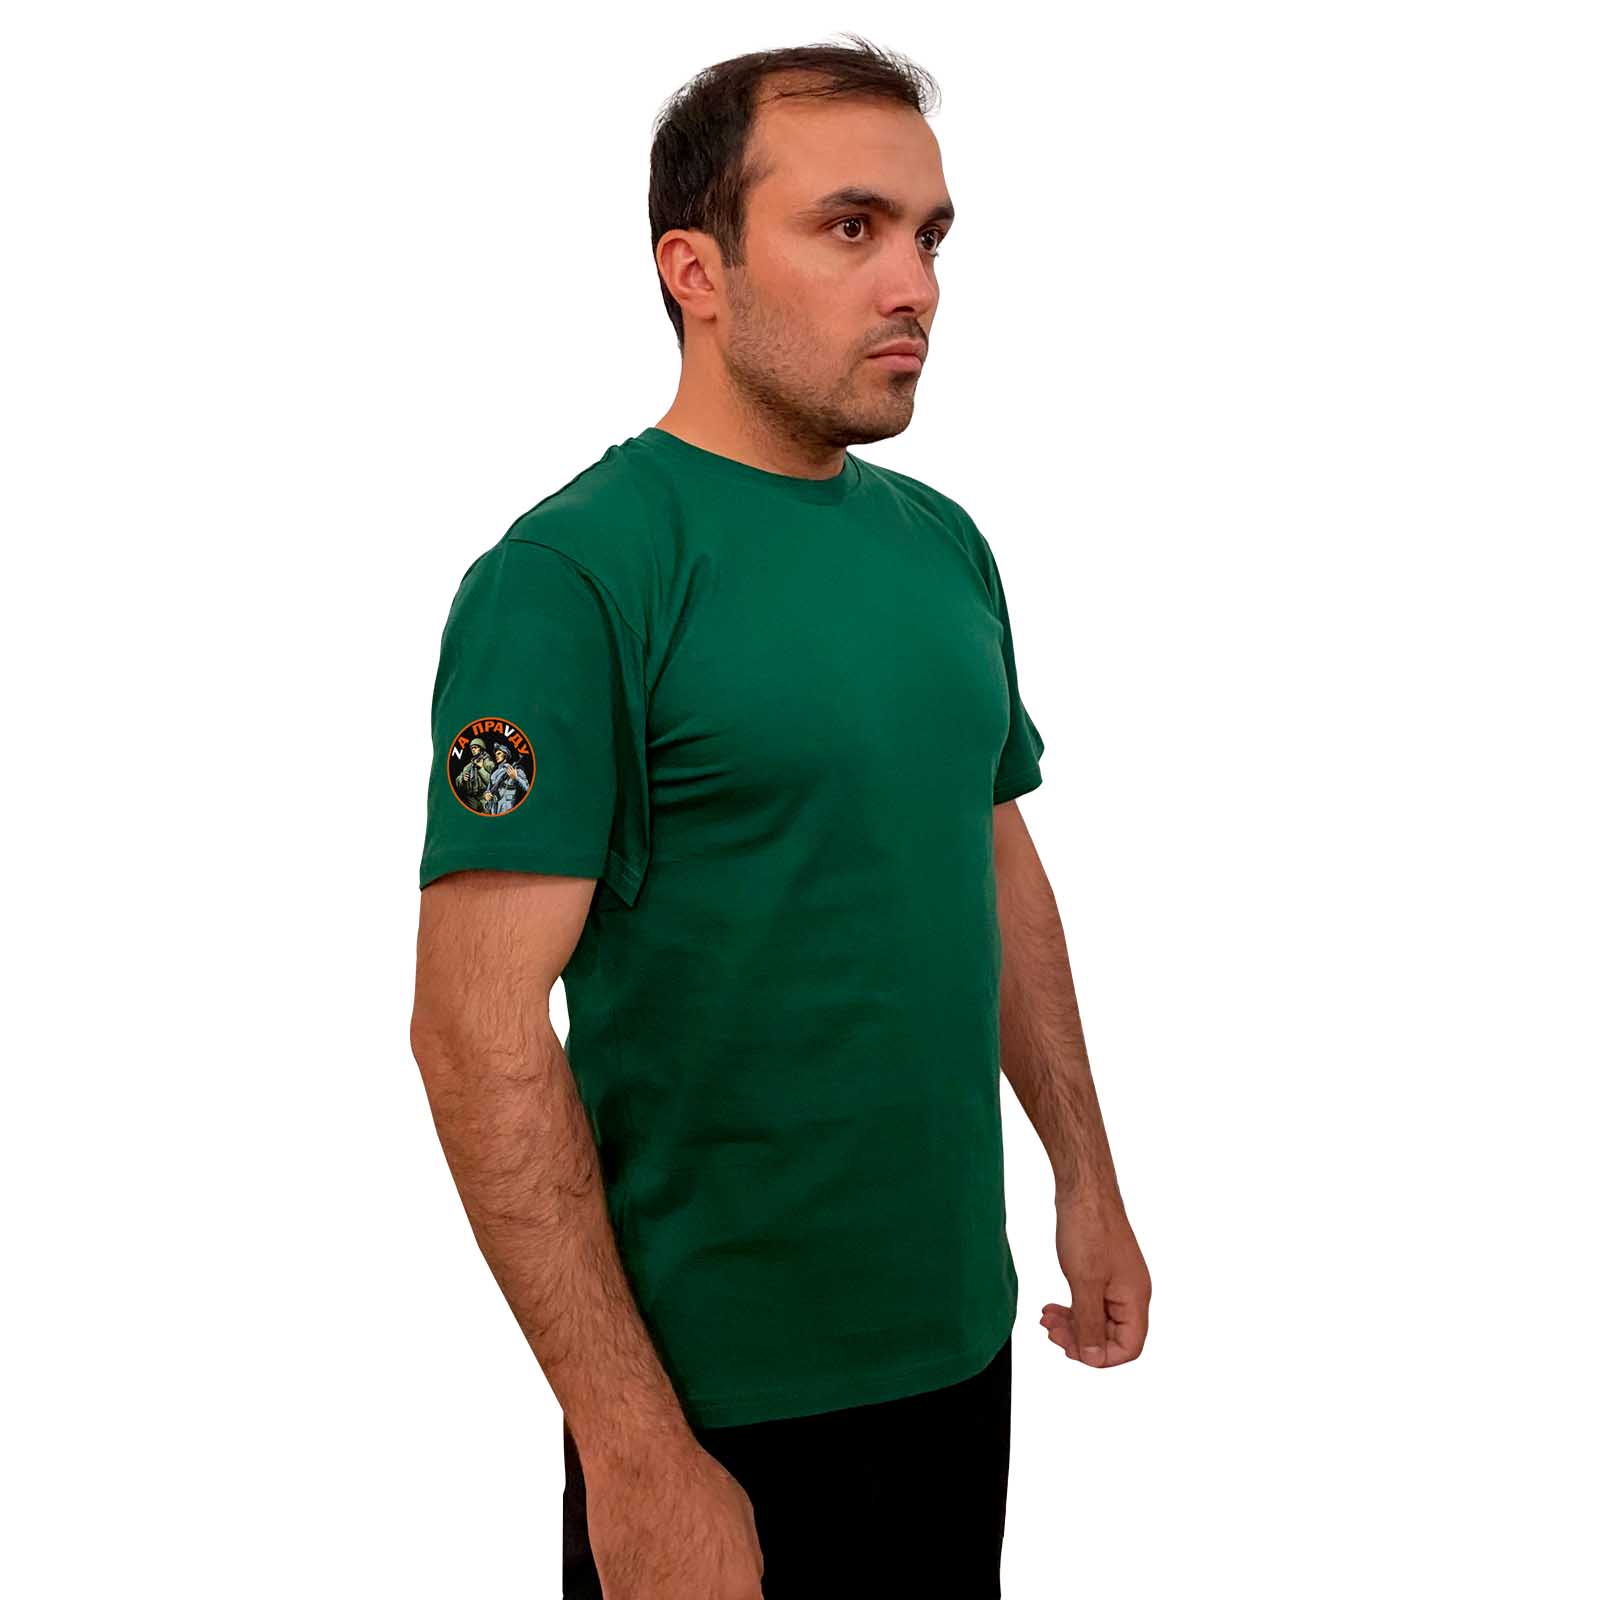 Зелёная футболка с термотрансфером "Zа праVду" на рукаве